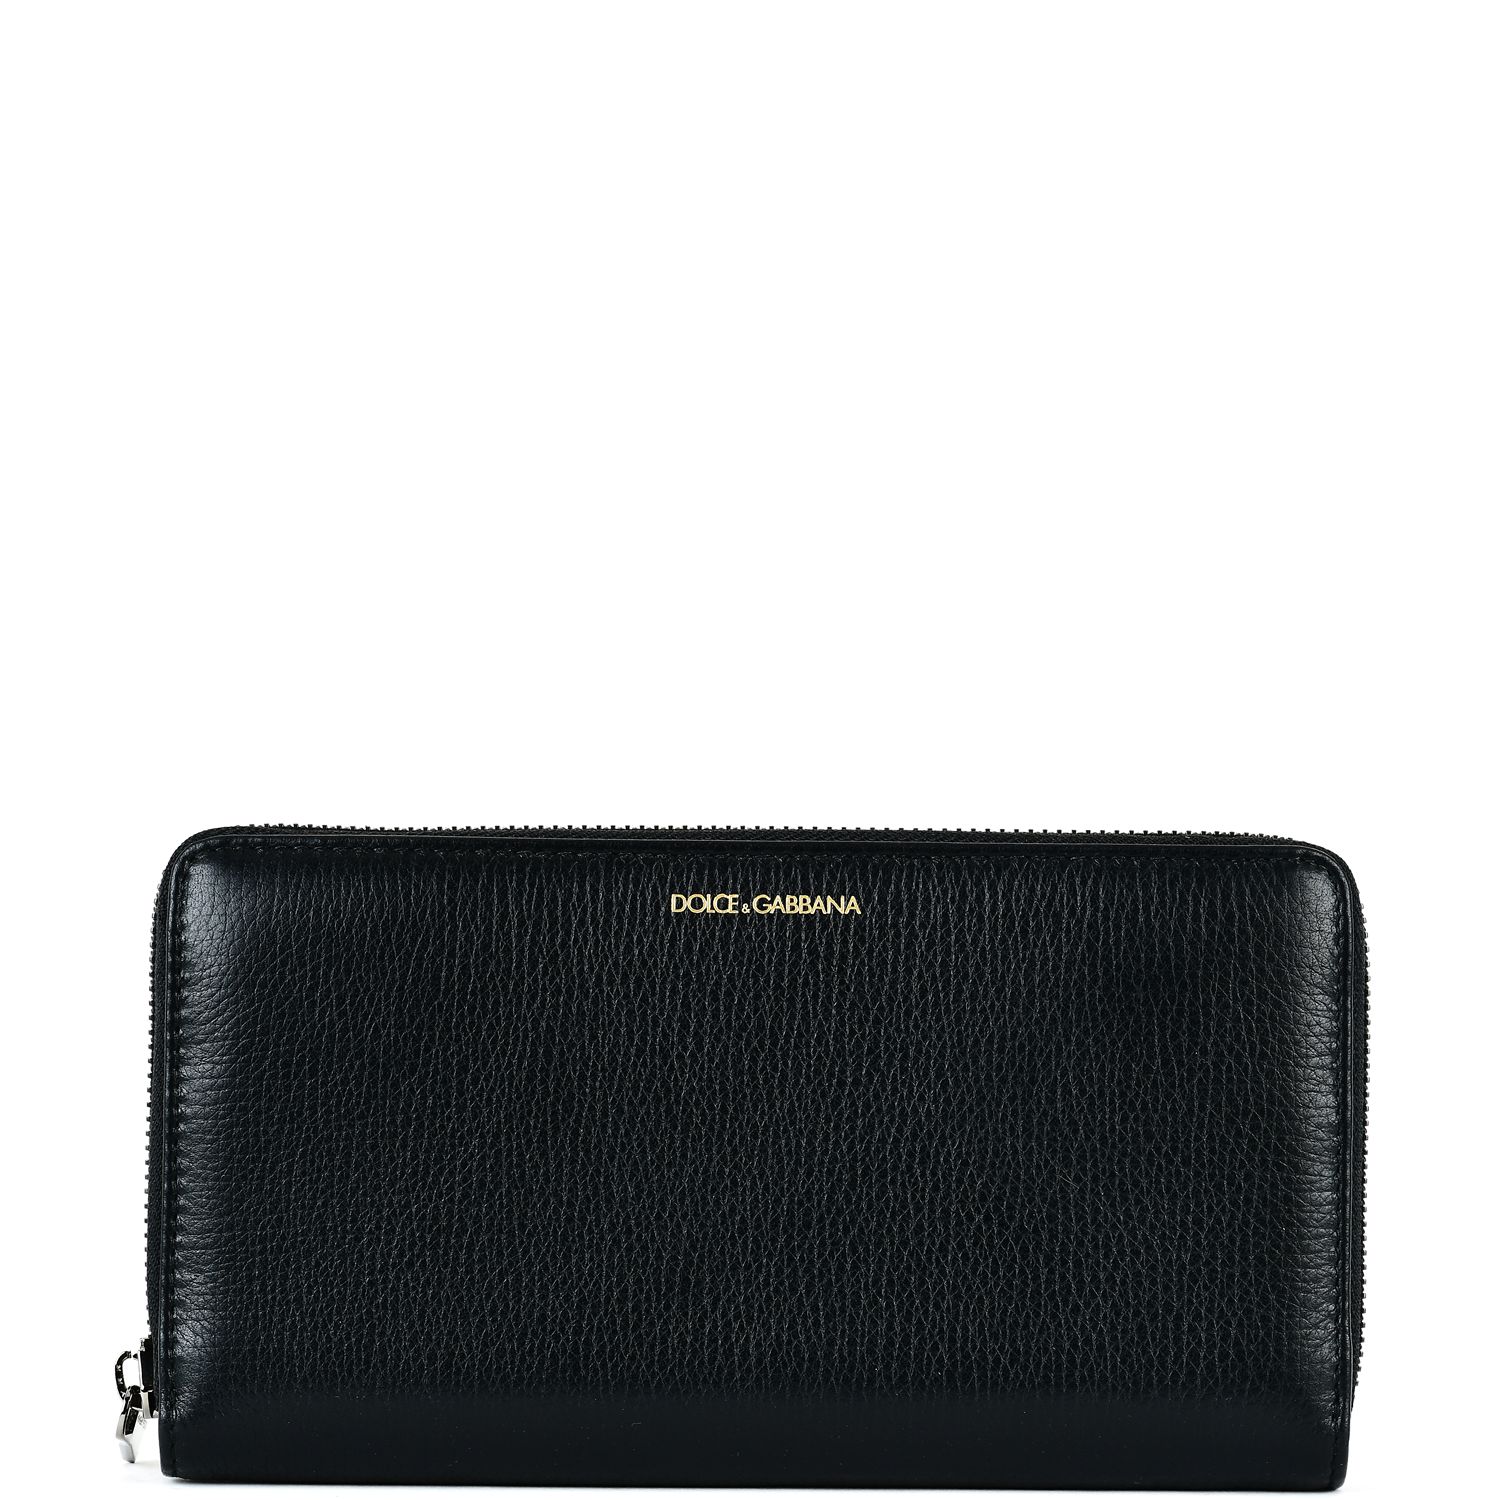 Dolce & Gabbana - Dolce & Gabbana Textured Wallet - BLACK, Men's ...